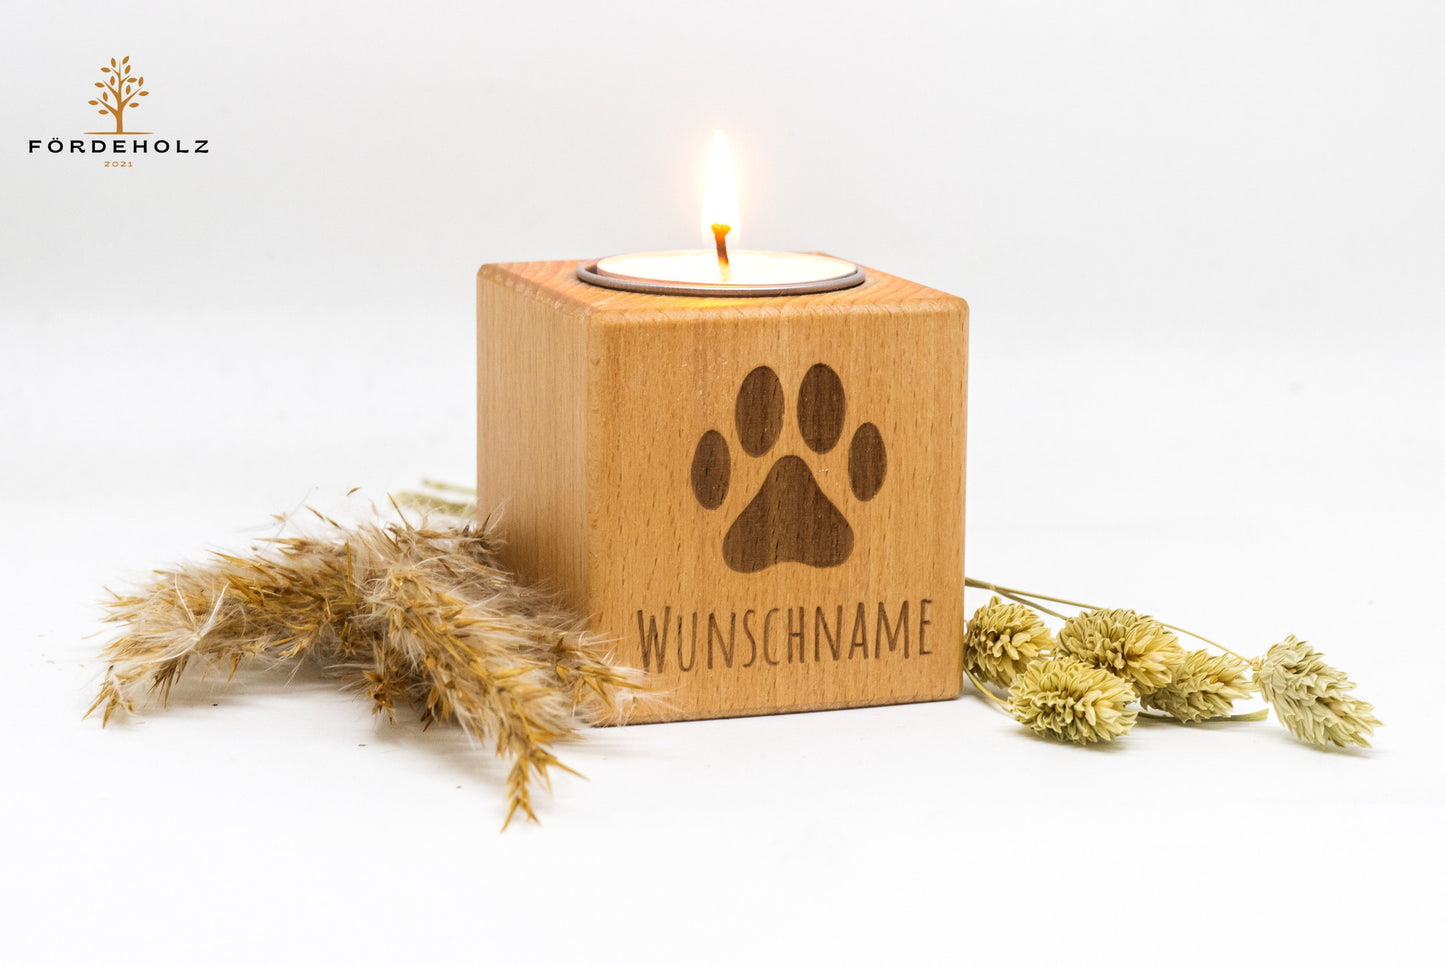 Trauerlicht Hund - Teelichthalter aus Buchenholz • mit Wunschgravur • Gedenkkerze • Trauerlicht Haustier Hund Katze • Windlicht • Teelicht